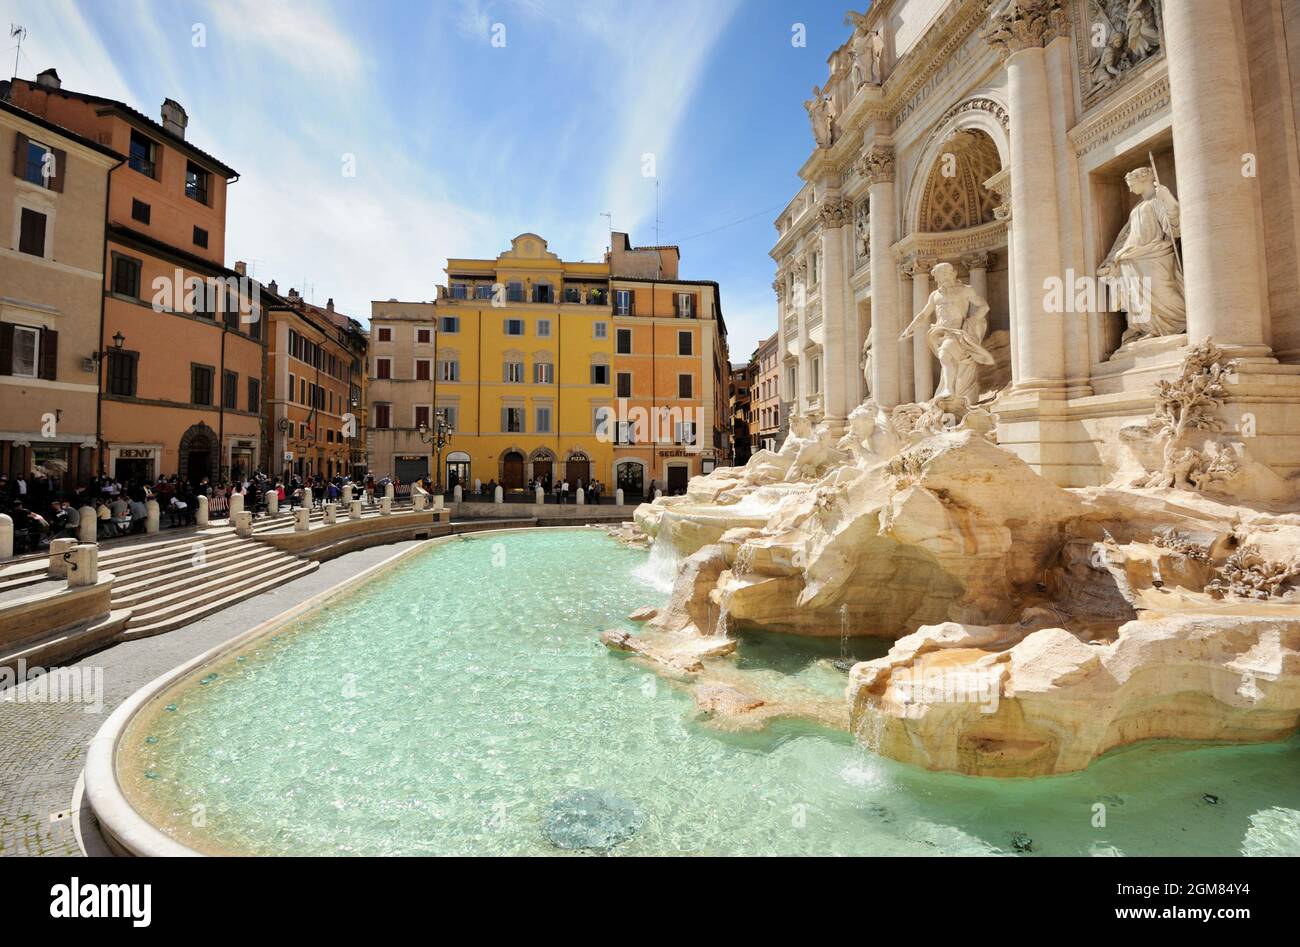 Trevi fountain, Rome, Italy Stock Photo